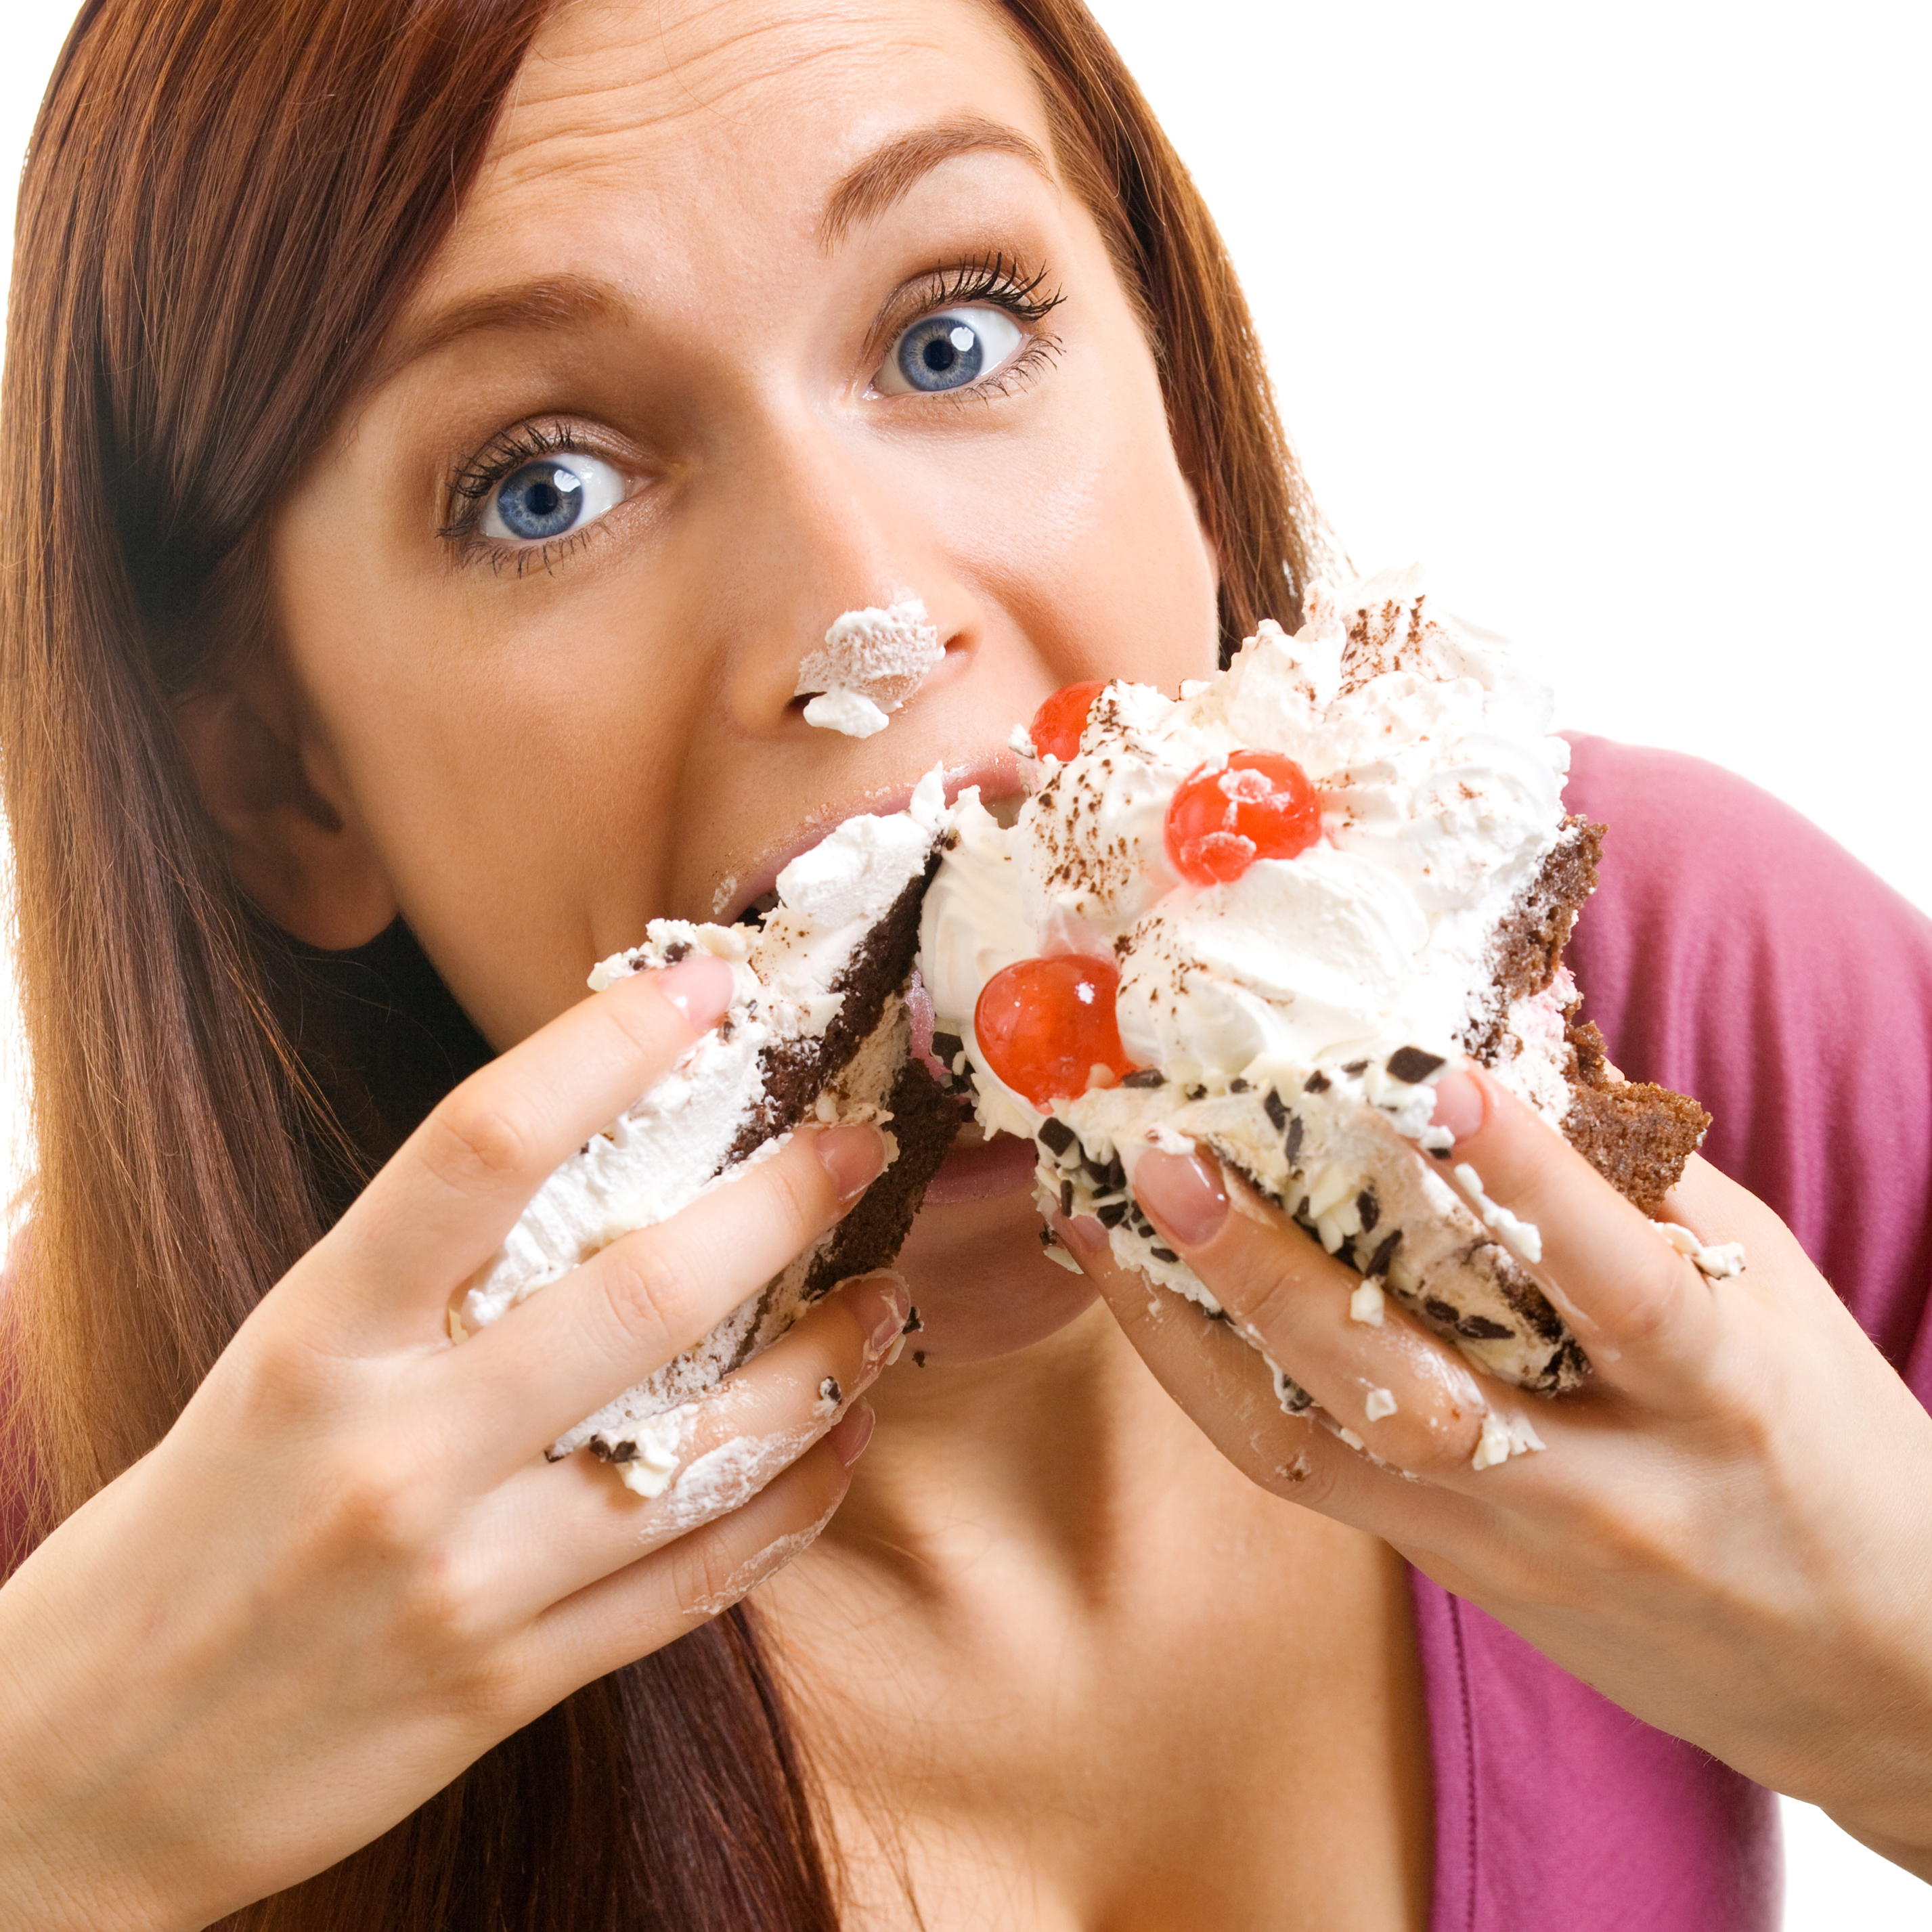 woman-eating-cake.jpg